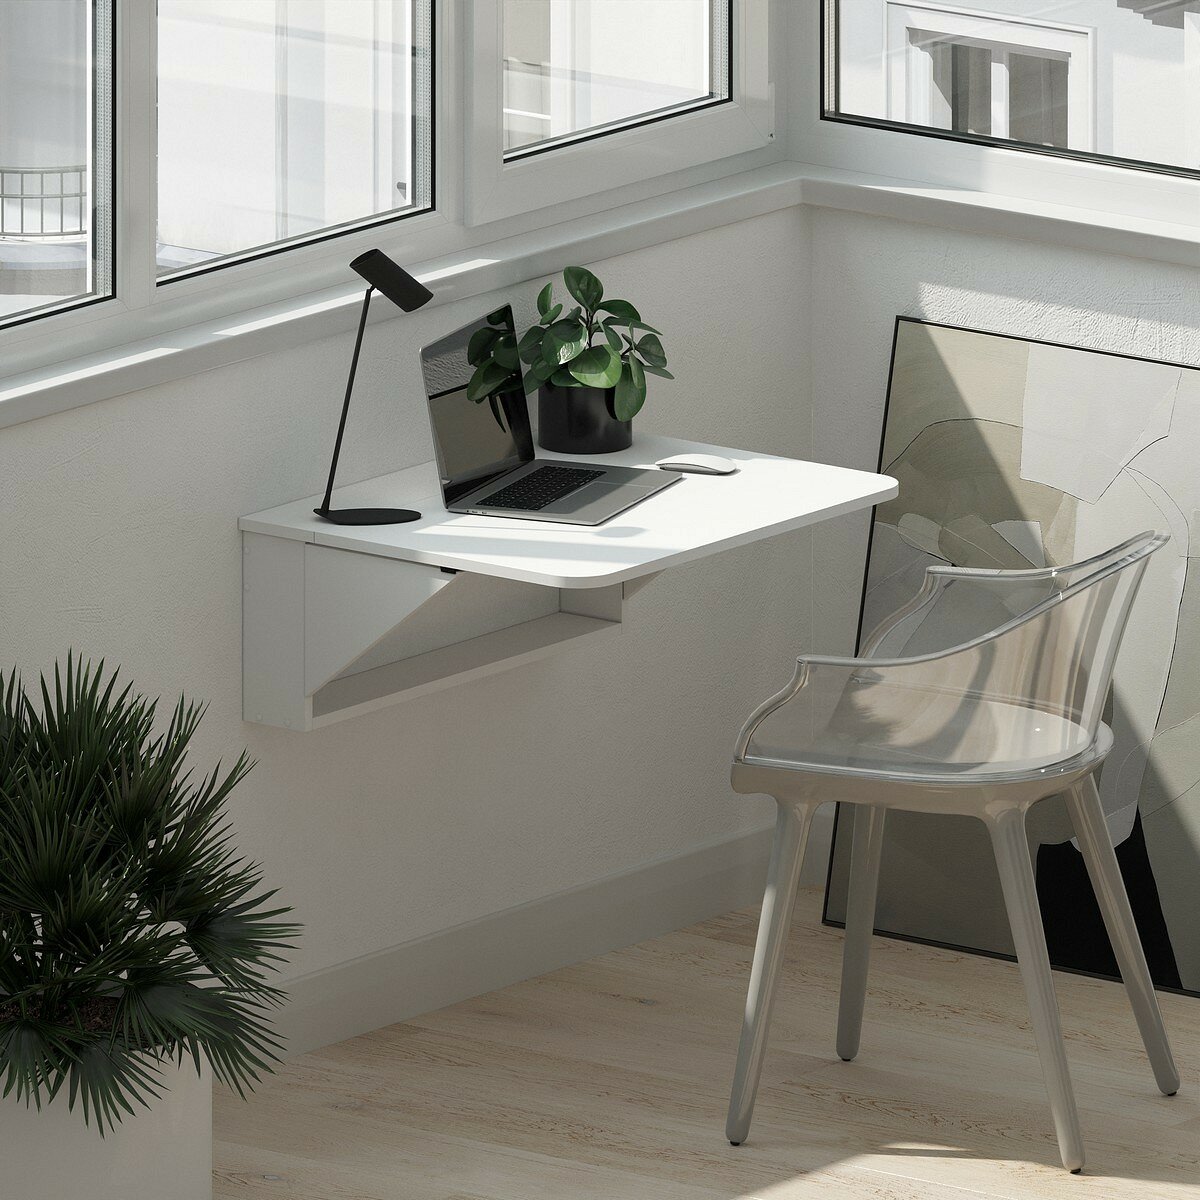 Столик откидной настенный письменный складной HESBY Amazing Assistant для ноутбука, для спальни, на балкон, на кухню. Габариты: 74х60х28 см. Цвет: белый